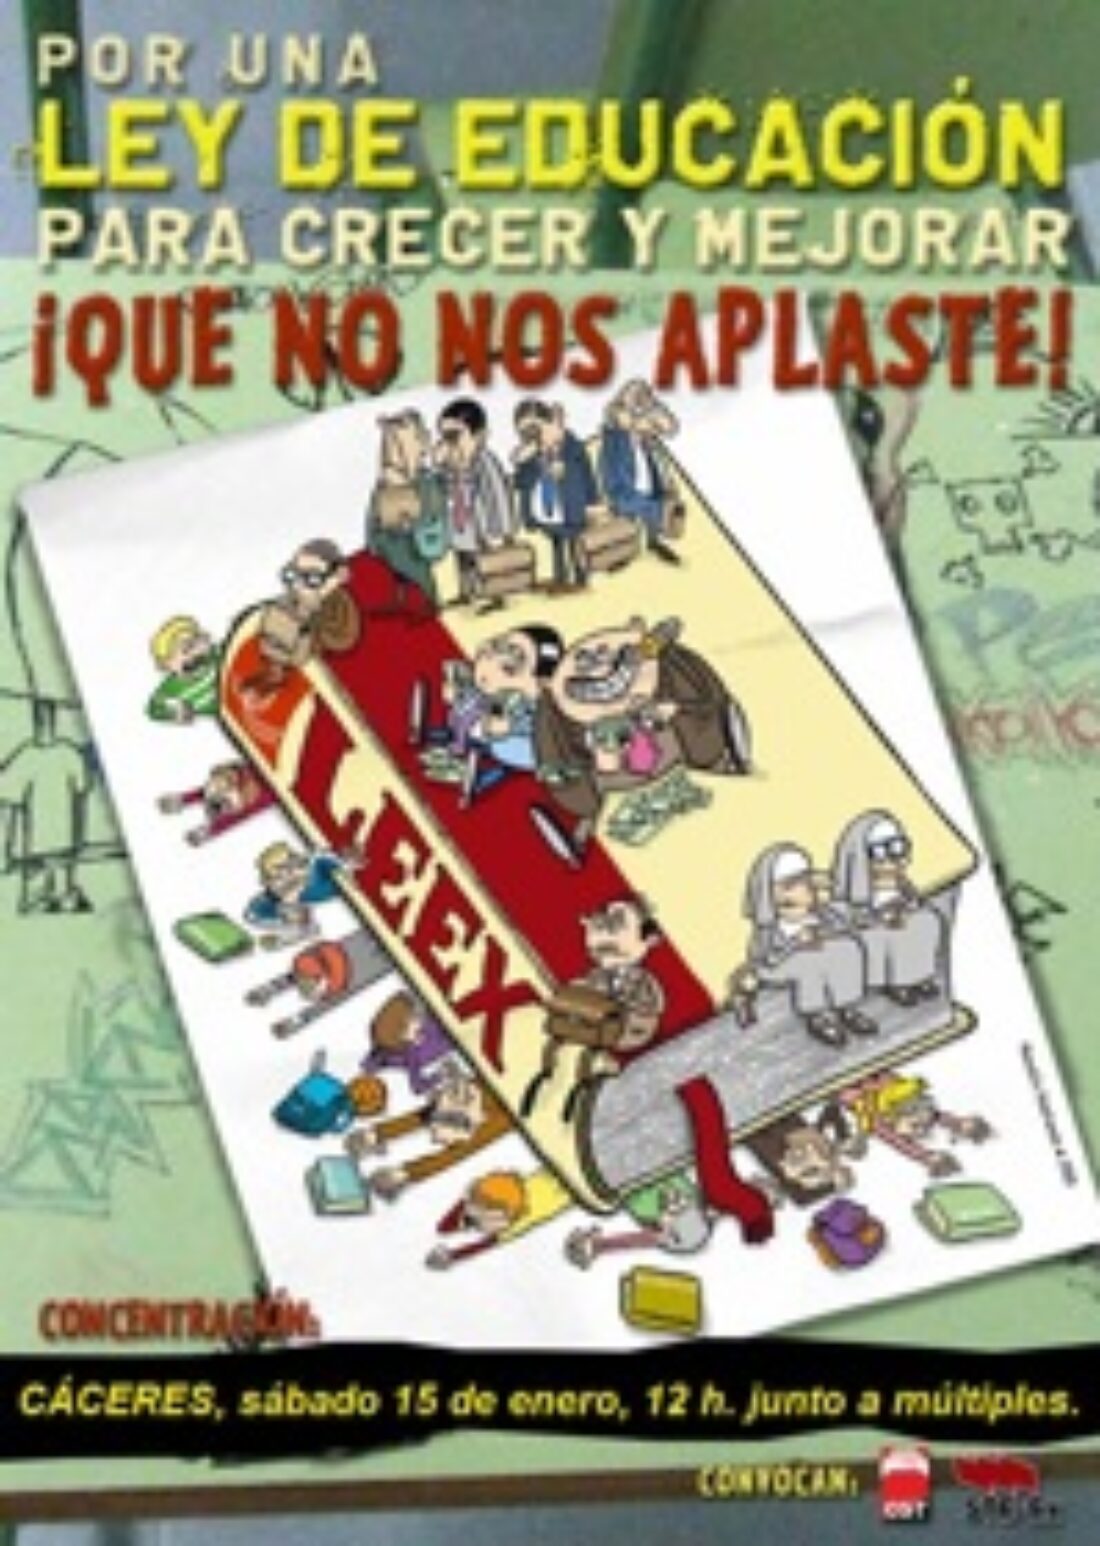 15 enero, Cáceres : Concentración-acto contra la Ley de Educación